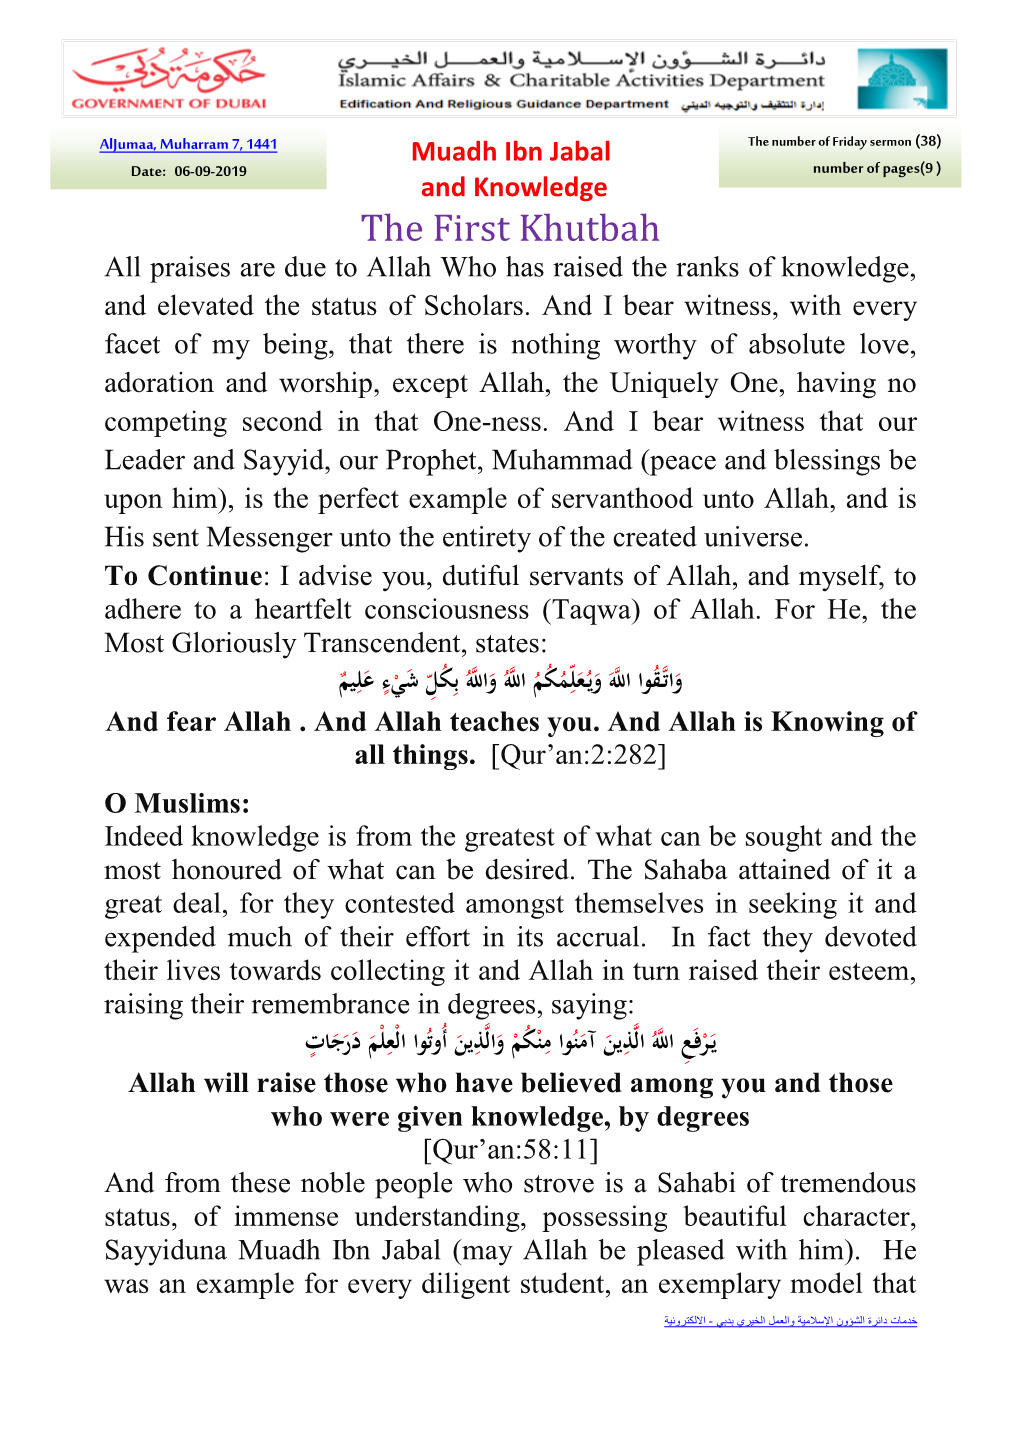 Muadh Ibn Jabal and Knowledge